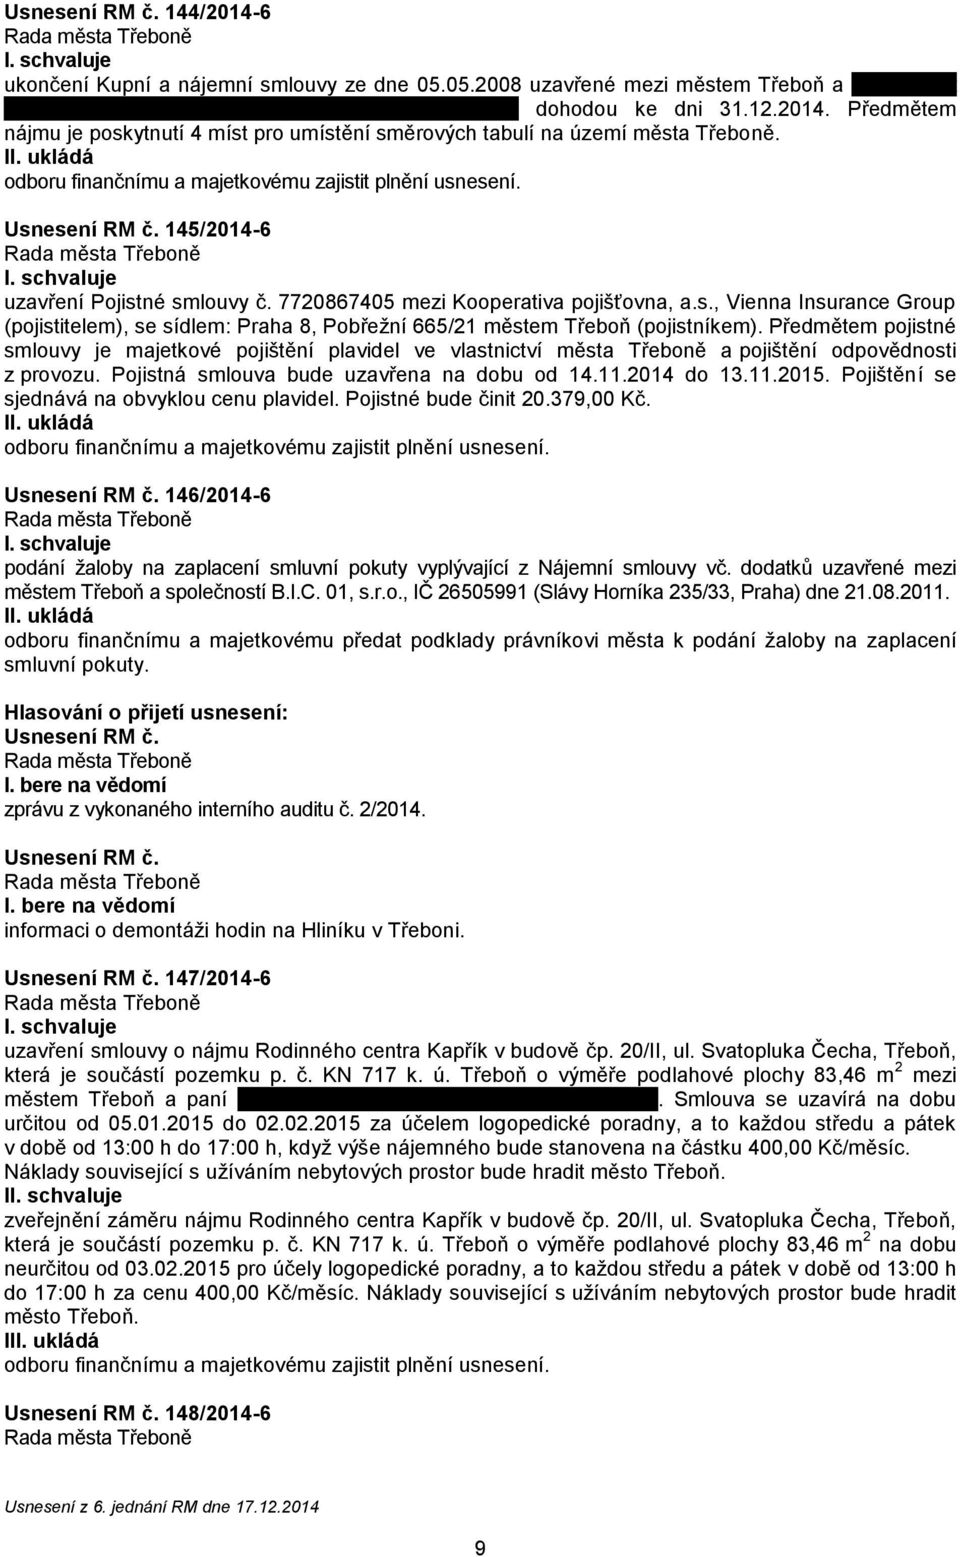 Předmětem pojistné smlouvy je majetkové pojištění plavidel ve vlastnictví města Třeboně a pojištění odpovědnosti z provozu. Pojistná smlouva bude uzavřena na dobu od 14.11.2014 do 13.11.2015.